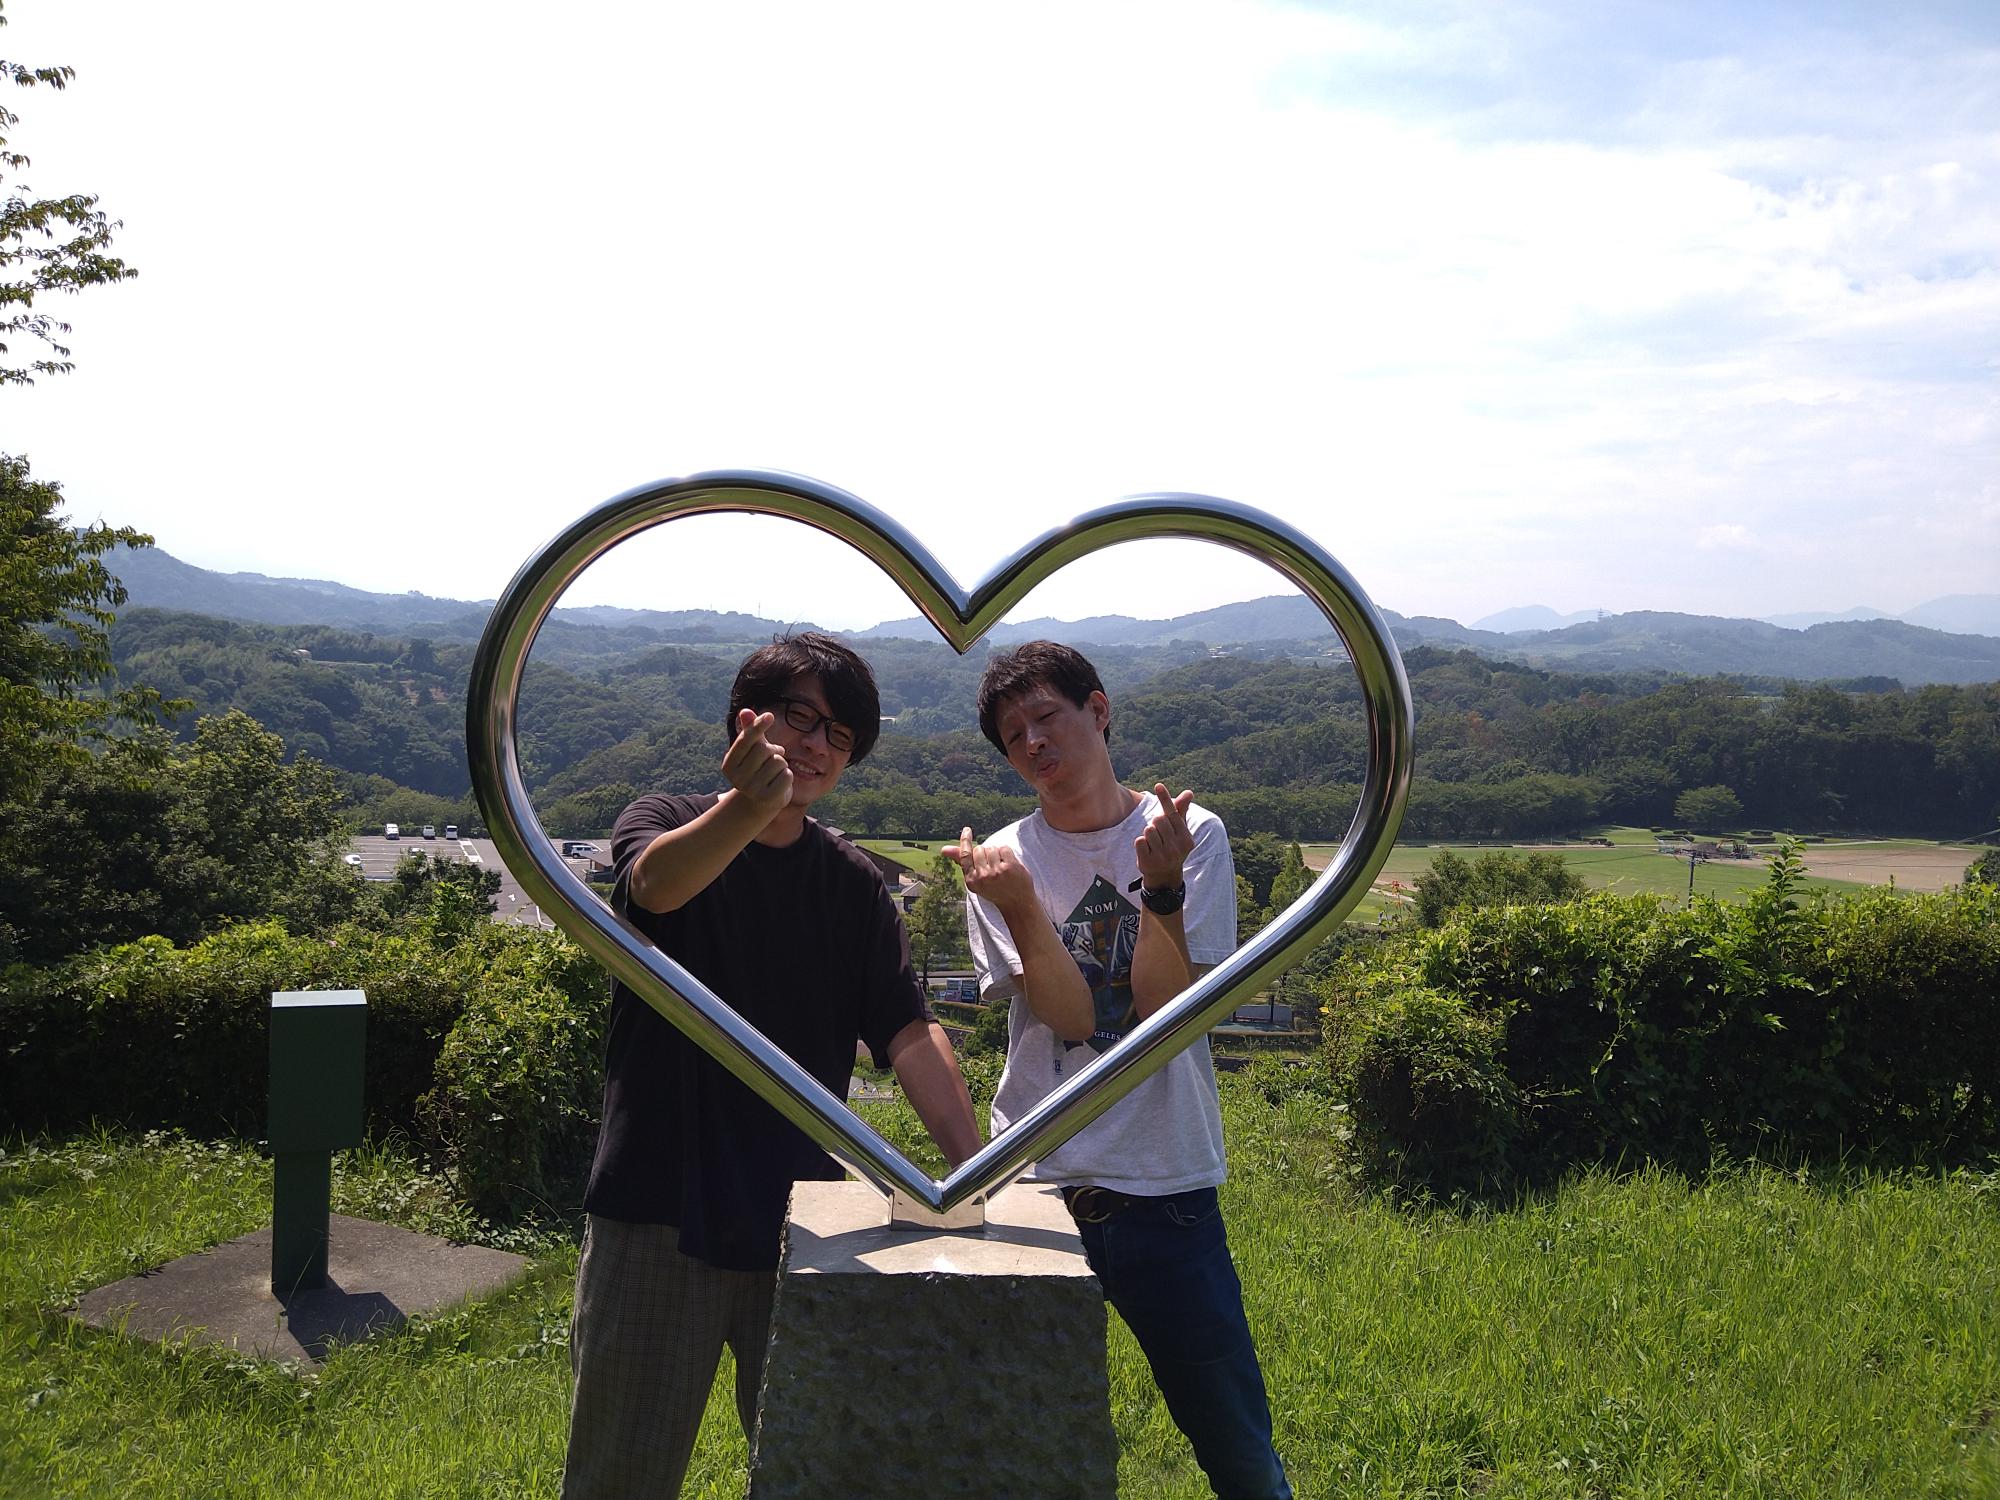 芸人囲碁将棋の二人が中井中央公園内のハートの丘にてハートのオブジェ越しに記念撮影をしている